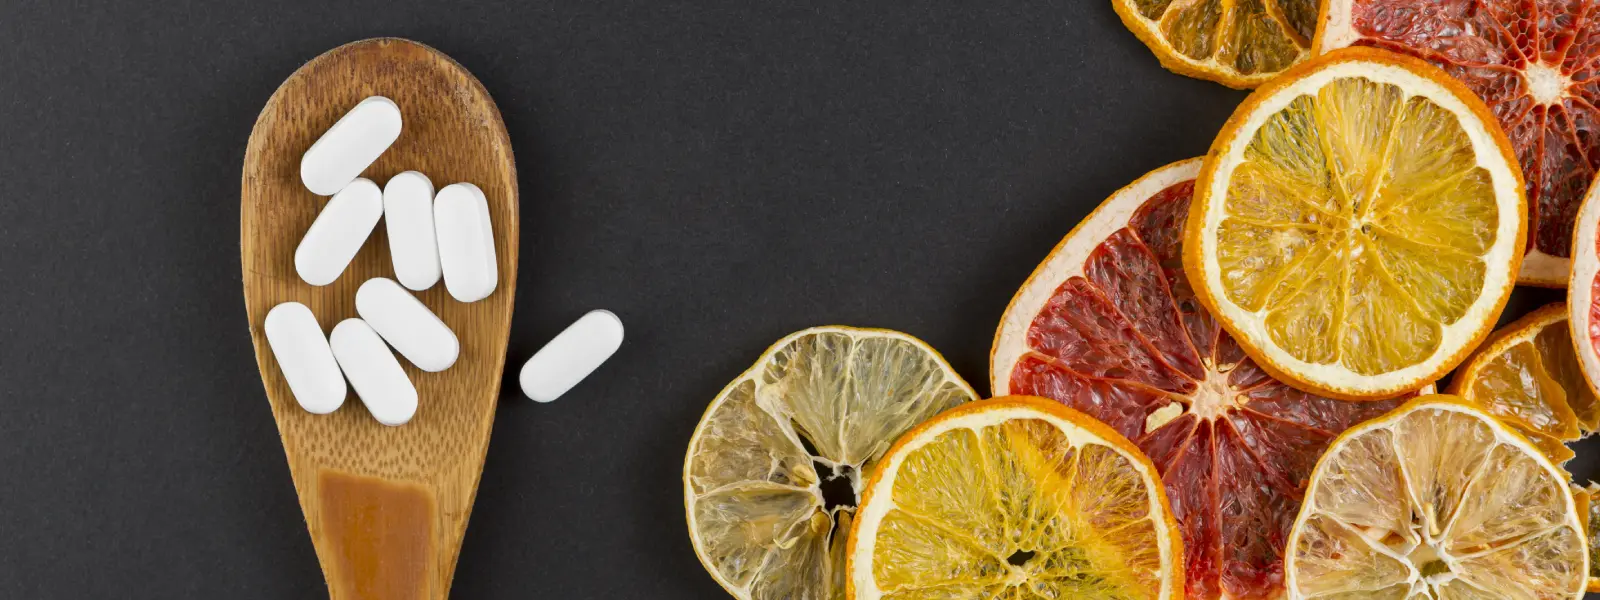 Cilt İçin Vitamin C Nasıl Kullanılır?